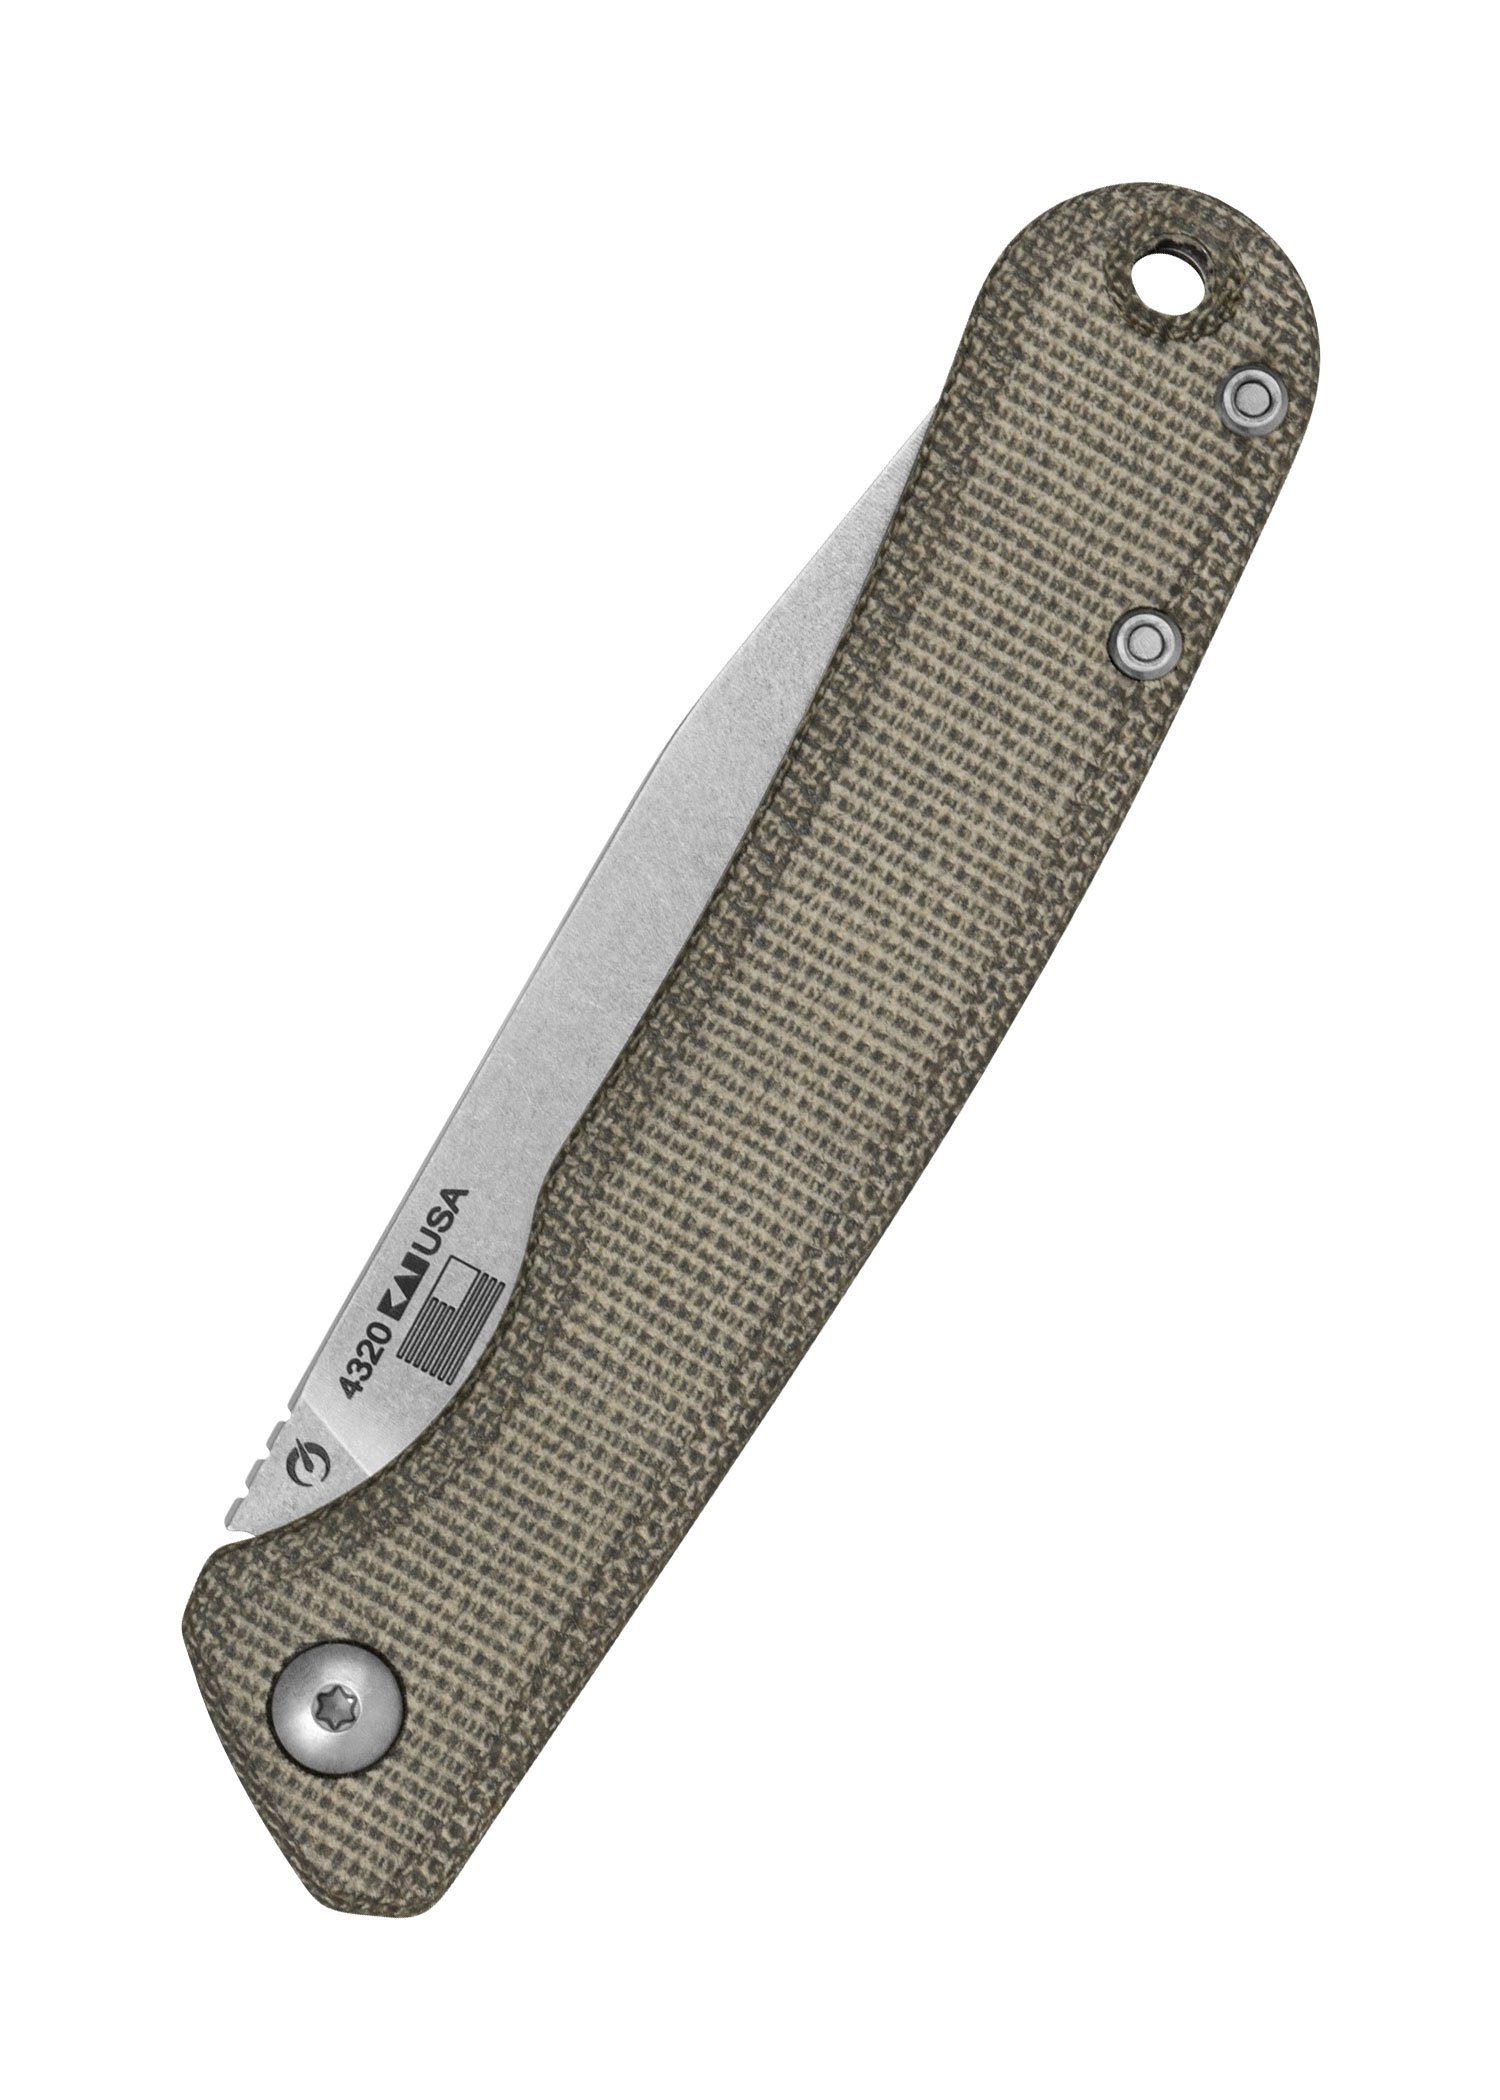 Kershaw - Taschenmesser CPM154 Pulverstahl Kershaw Knives Federalist Tachenmesser Slipjoint mit